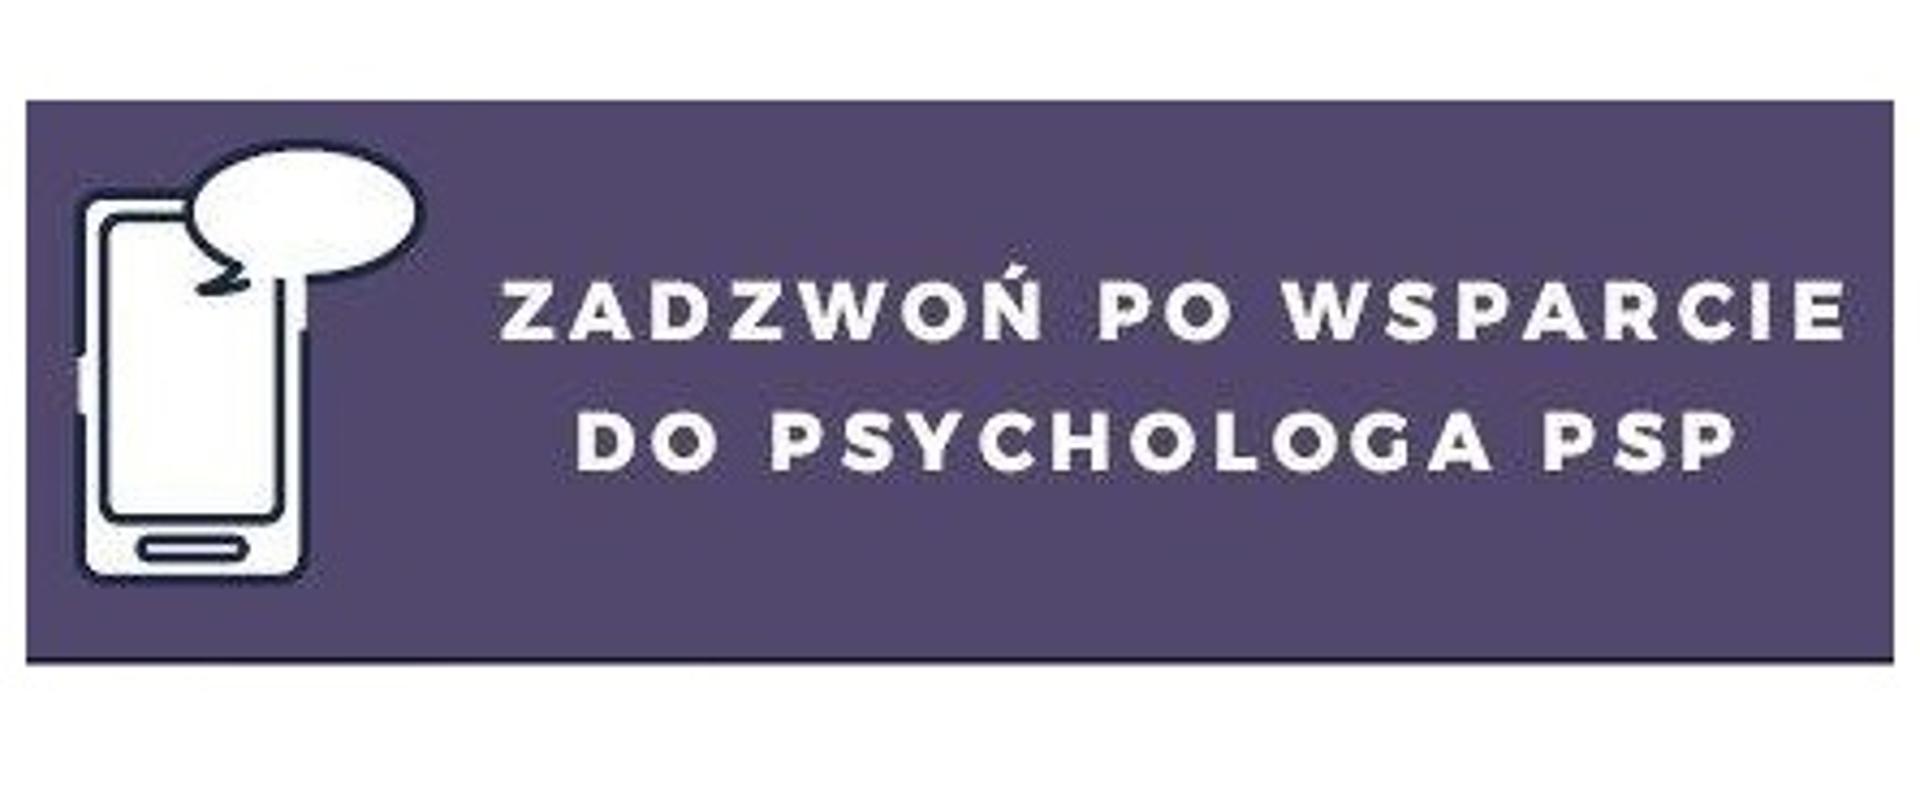 Grafika w kolorze granatu z białym napisem "Zadzwoń po wsparcie do psychologa PSP"